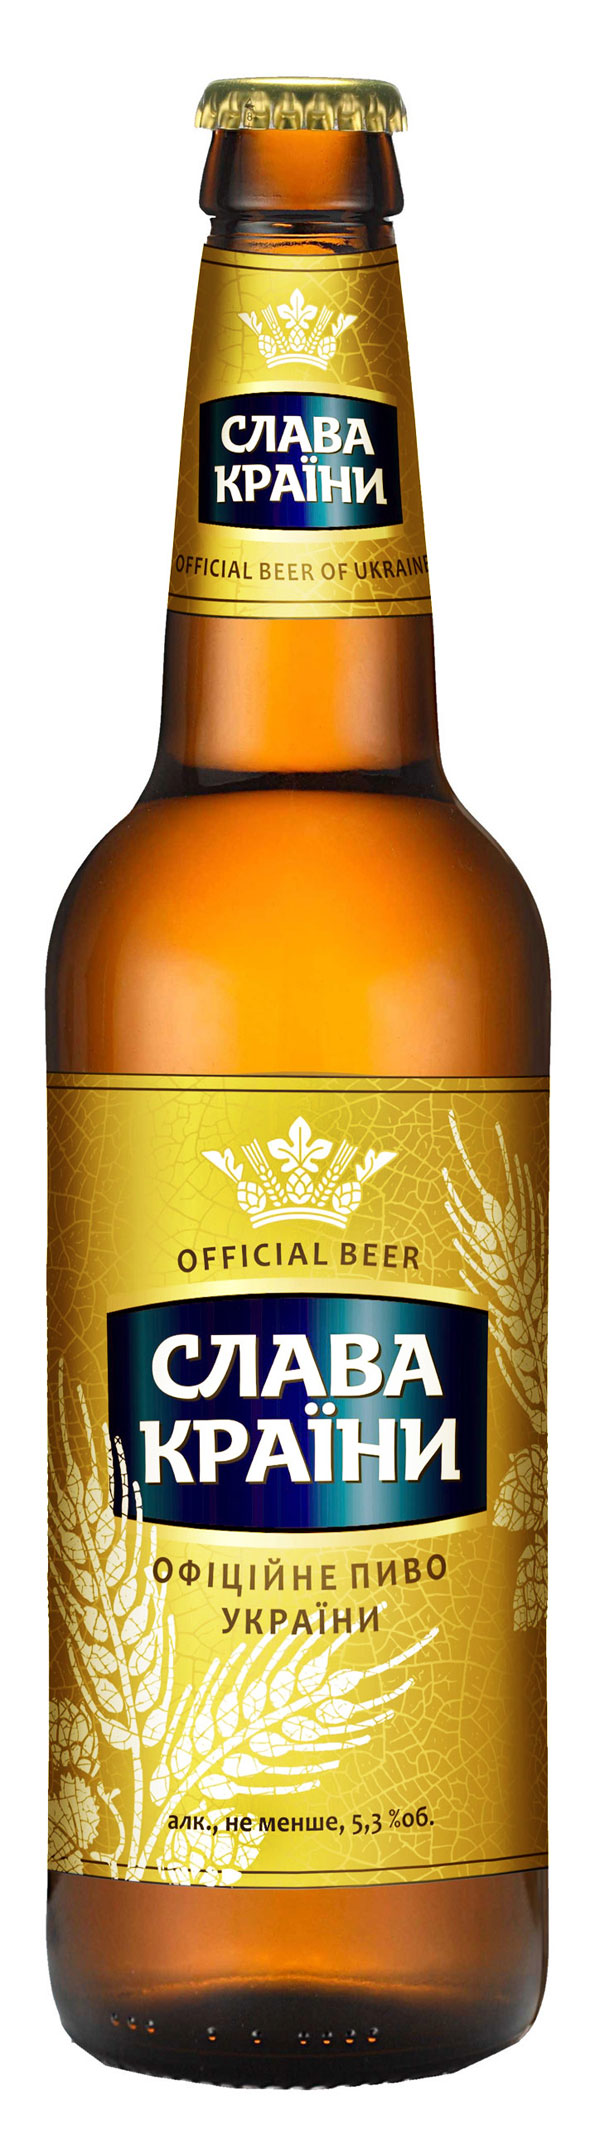 Бутылочка специального пива «Слава країни»